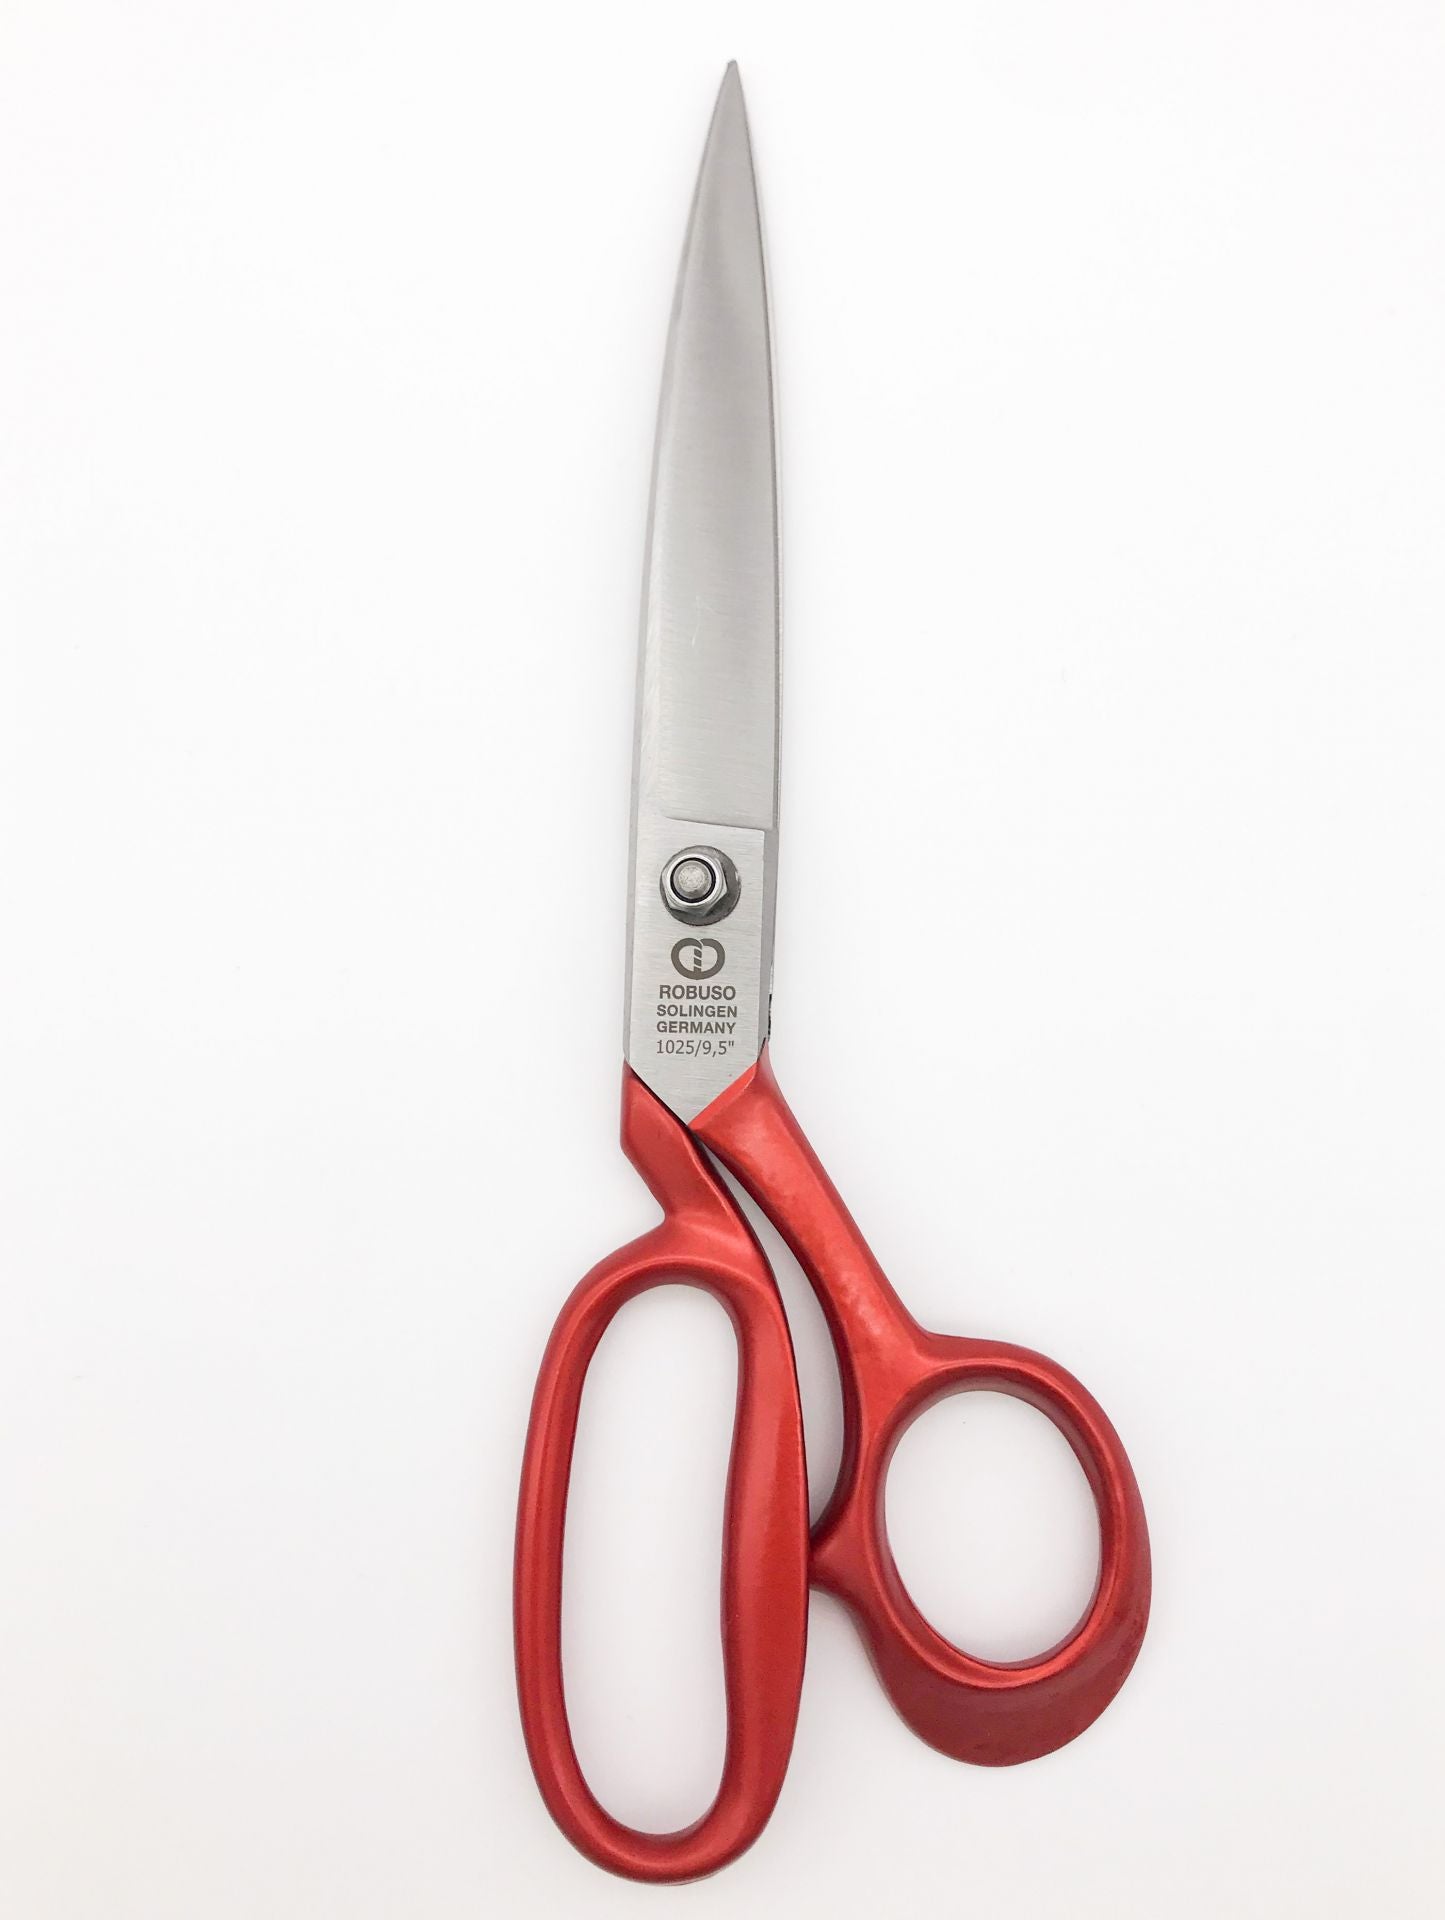 Tailor scissors, 9" / 23.5 cm